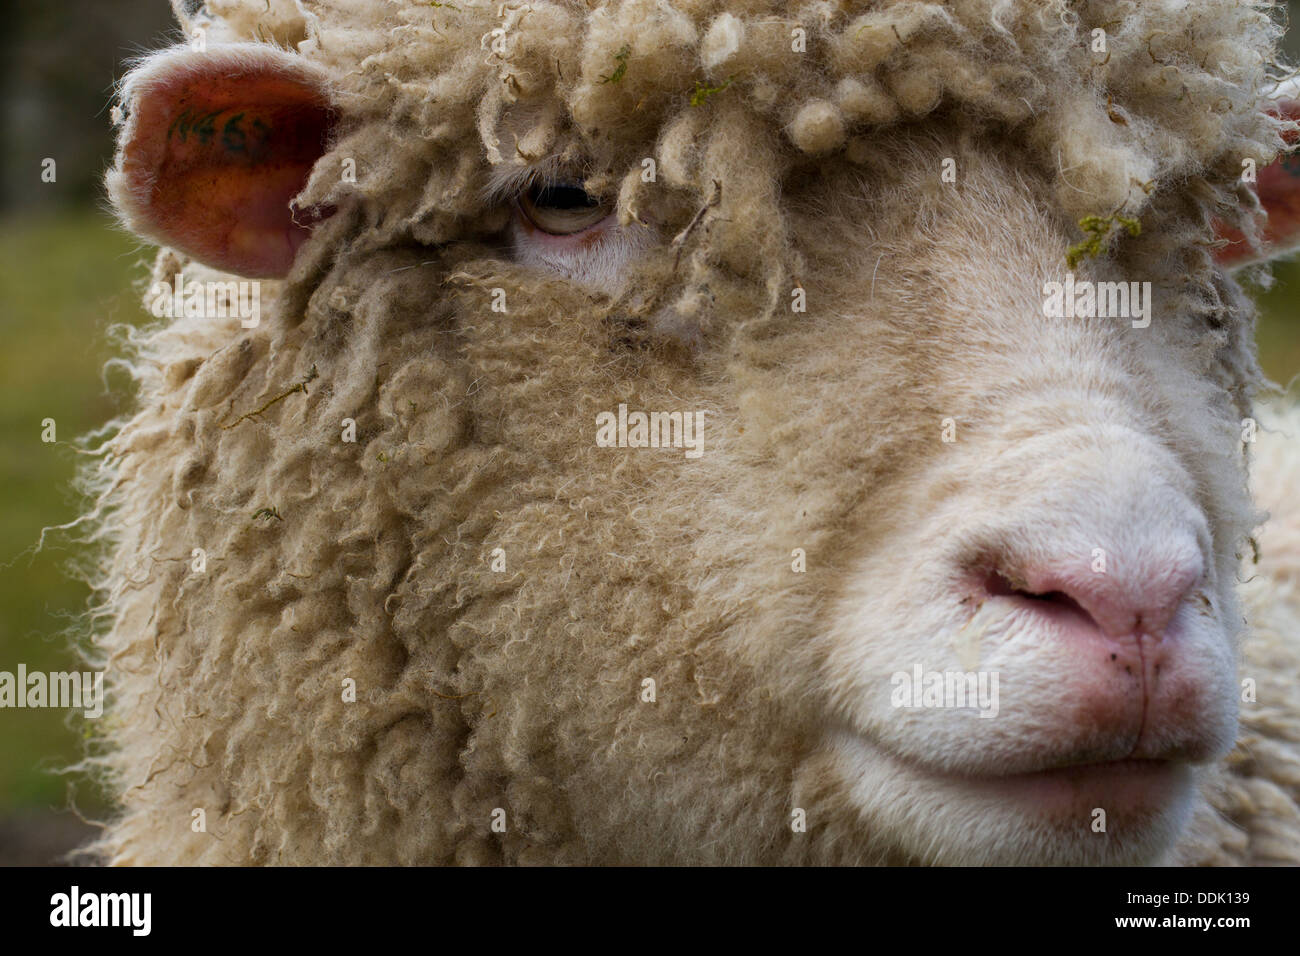 Portrait d'un brebis Dorset. Powys, Pays de Galles. Avril. Banque D'Images